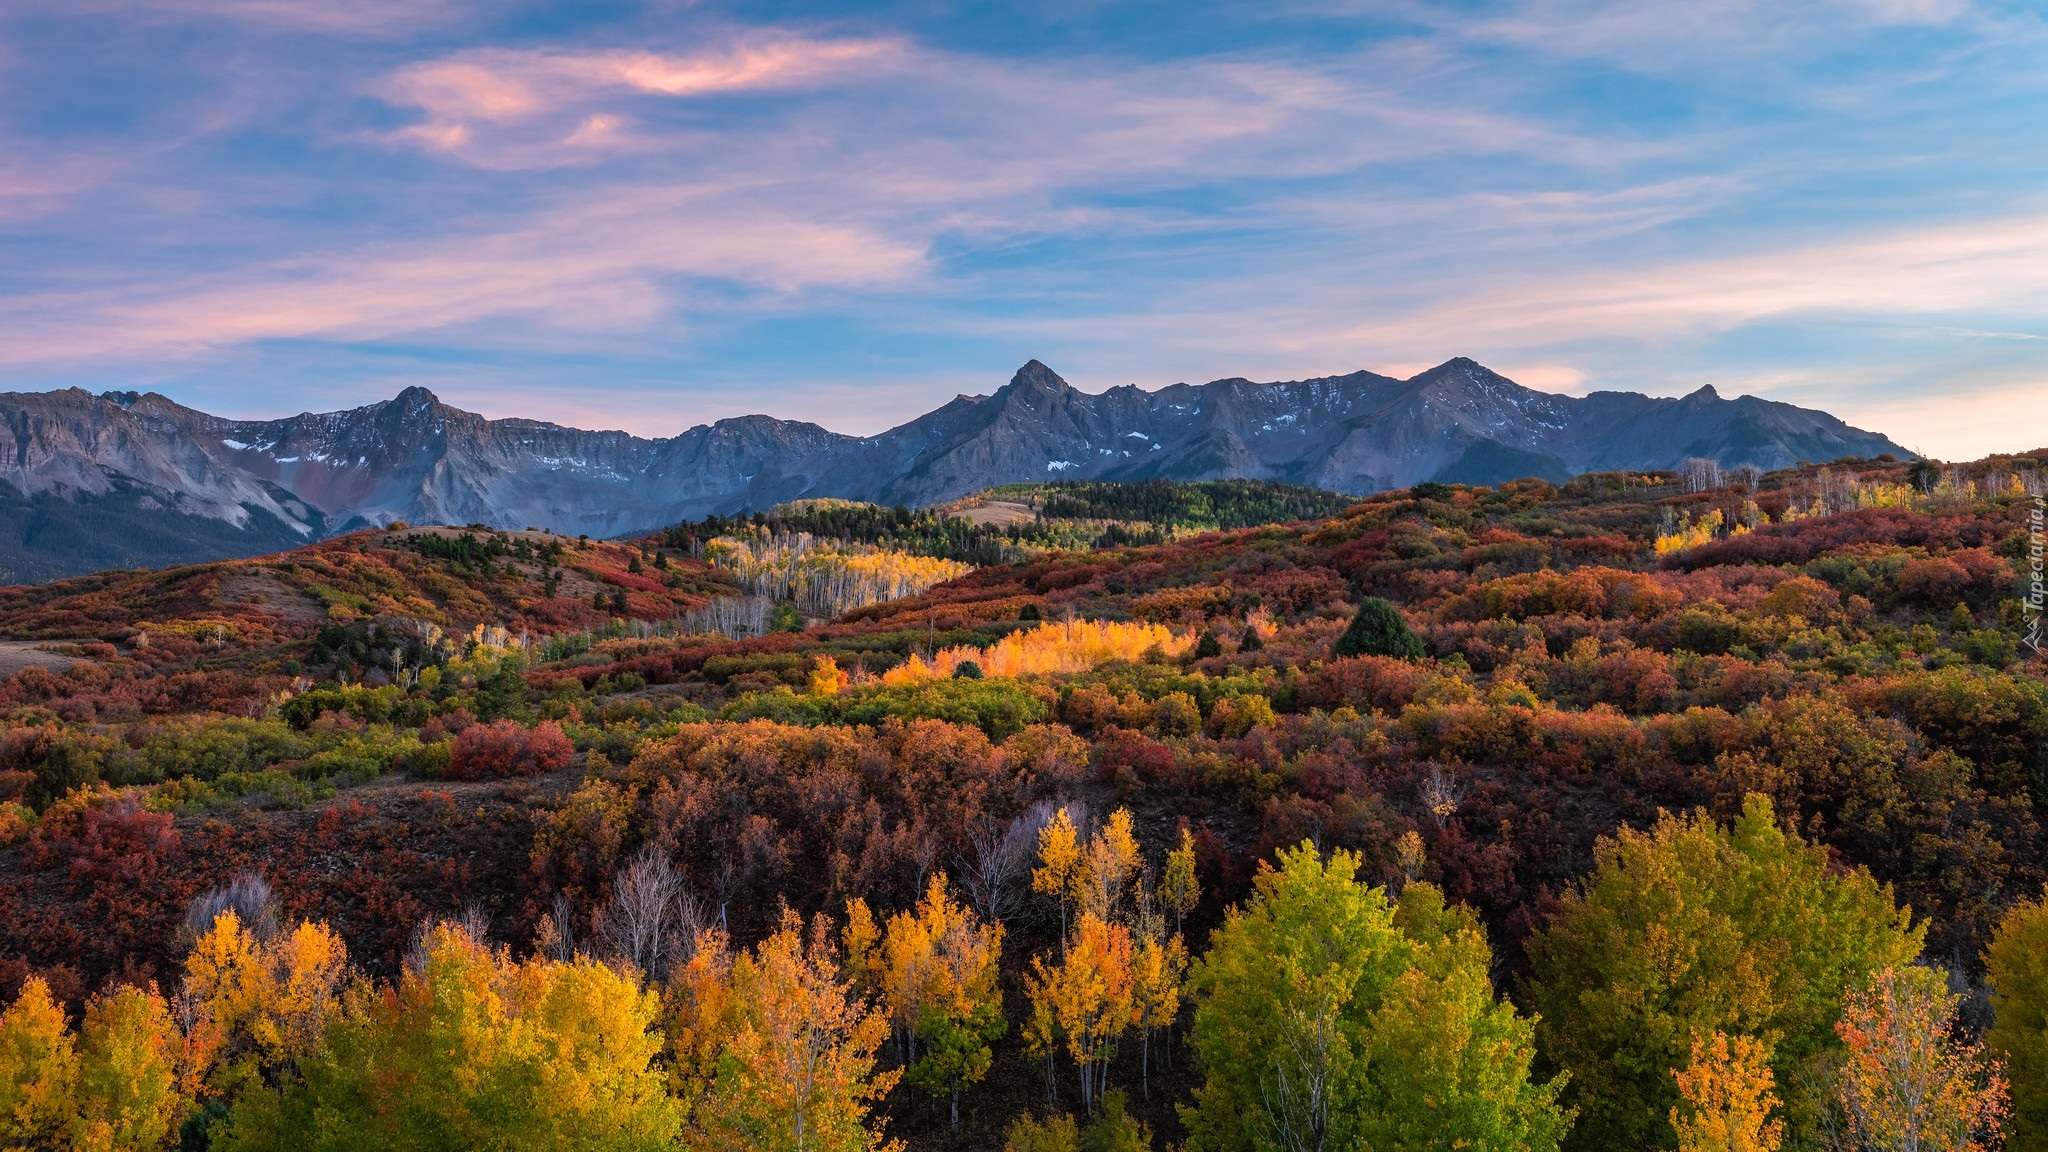 Telluride, Las, Jesień, Góry, San Juan Mountains, Drzewa, Kolorado, Stany Zjednoczone